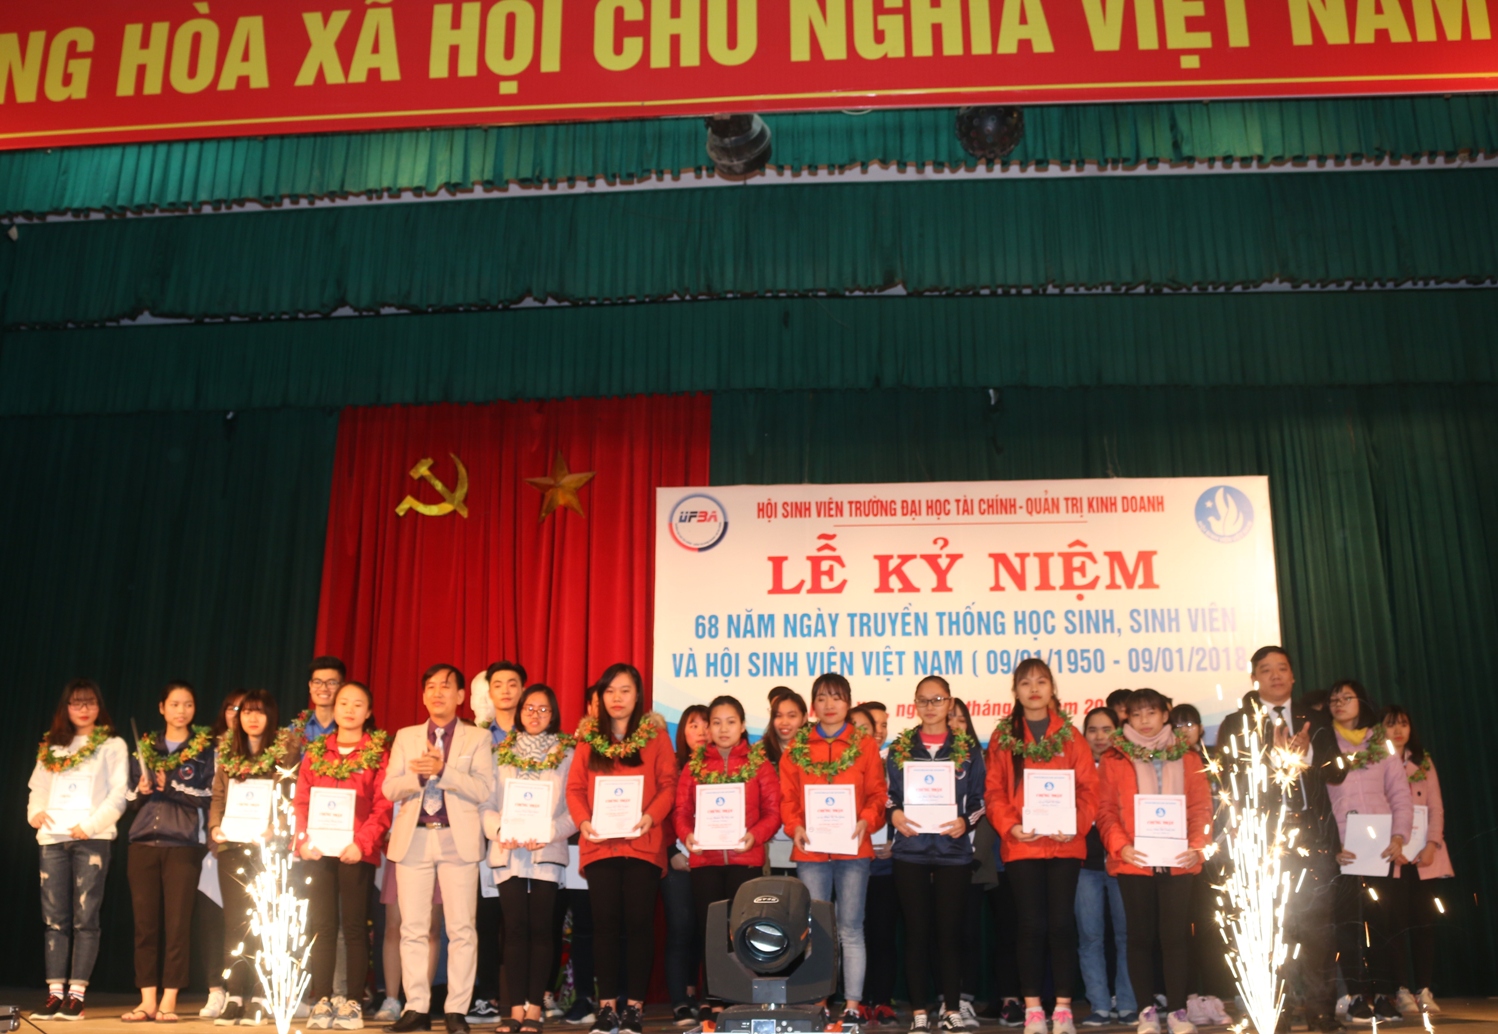 Lễ kỷ niệm 68 năm ngày truyền thống Học sinh sinh viên và Hội sinh viên Việt Nam (09/01/1950 - 09/01/2018)